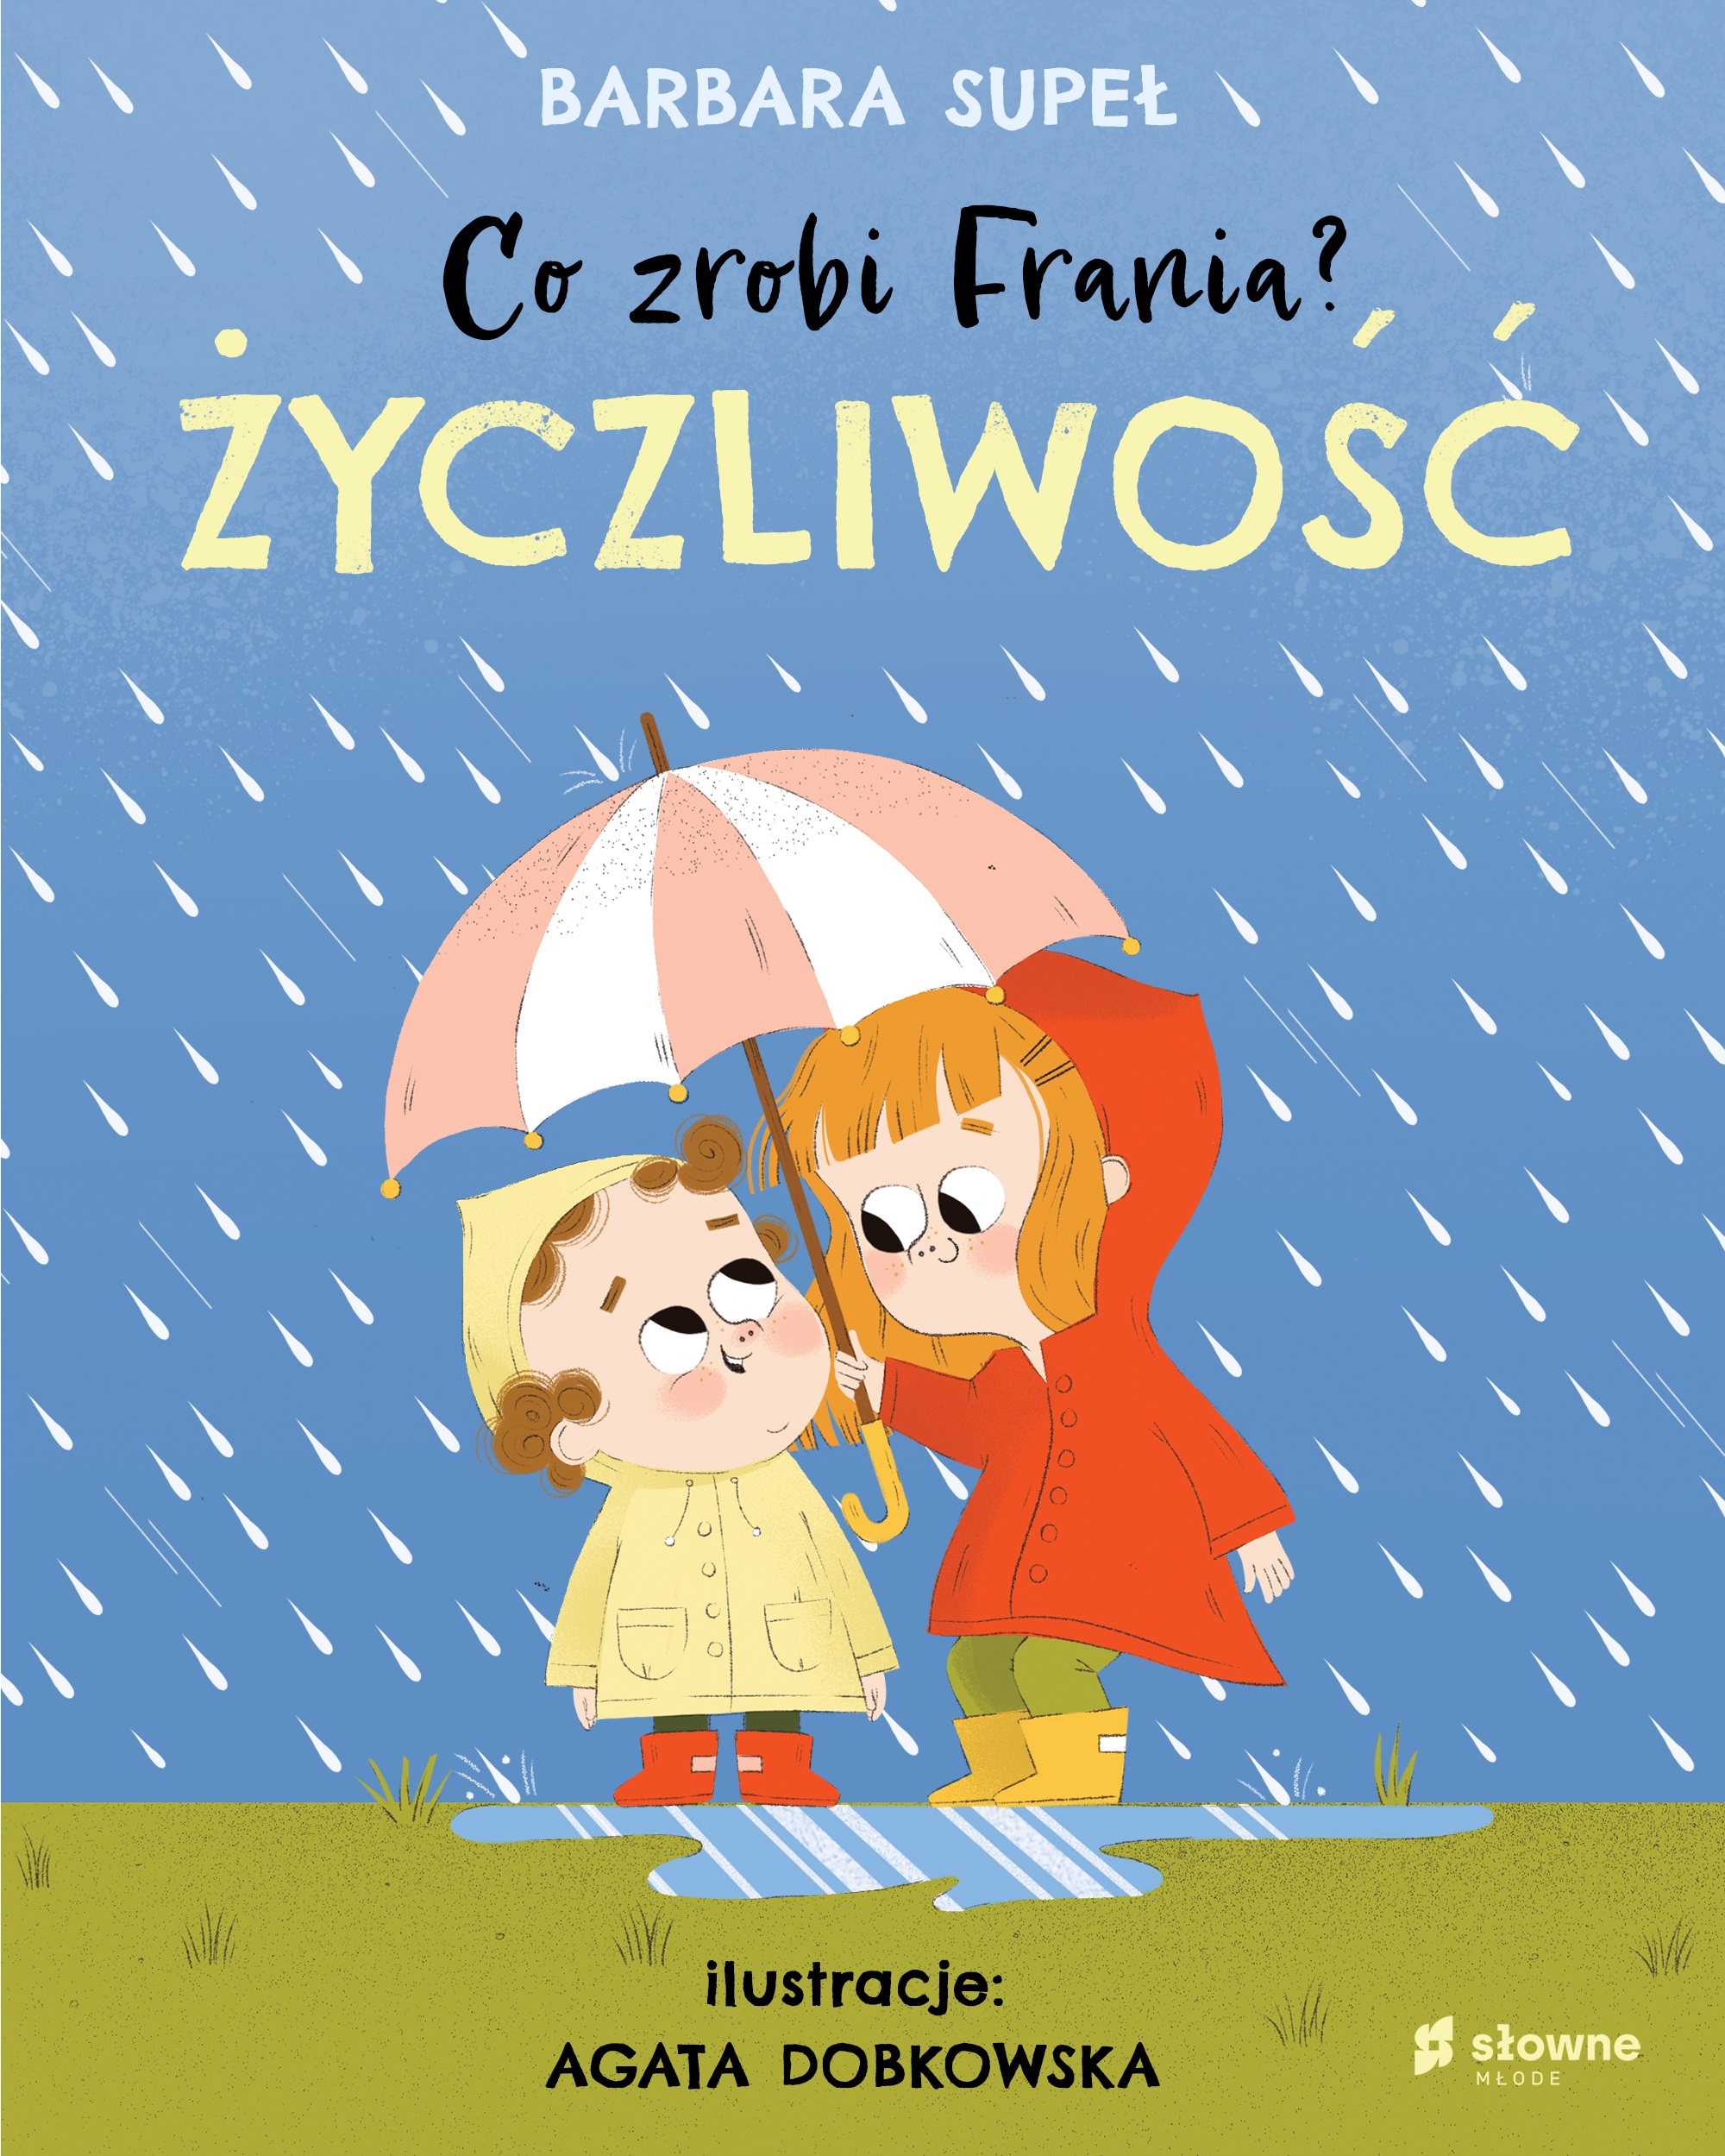 Okładka rysunkowa. Dwoje dzieci idą wśród deszczu. Starsza dziewczynka trzyma parasol nad młodszym chłopcem.